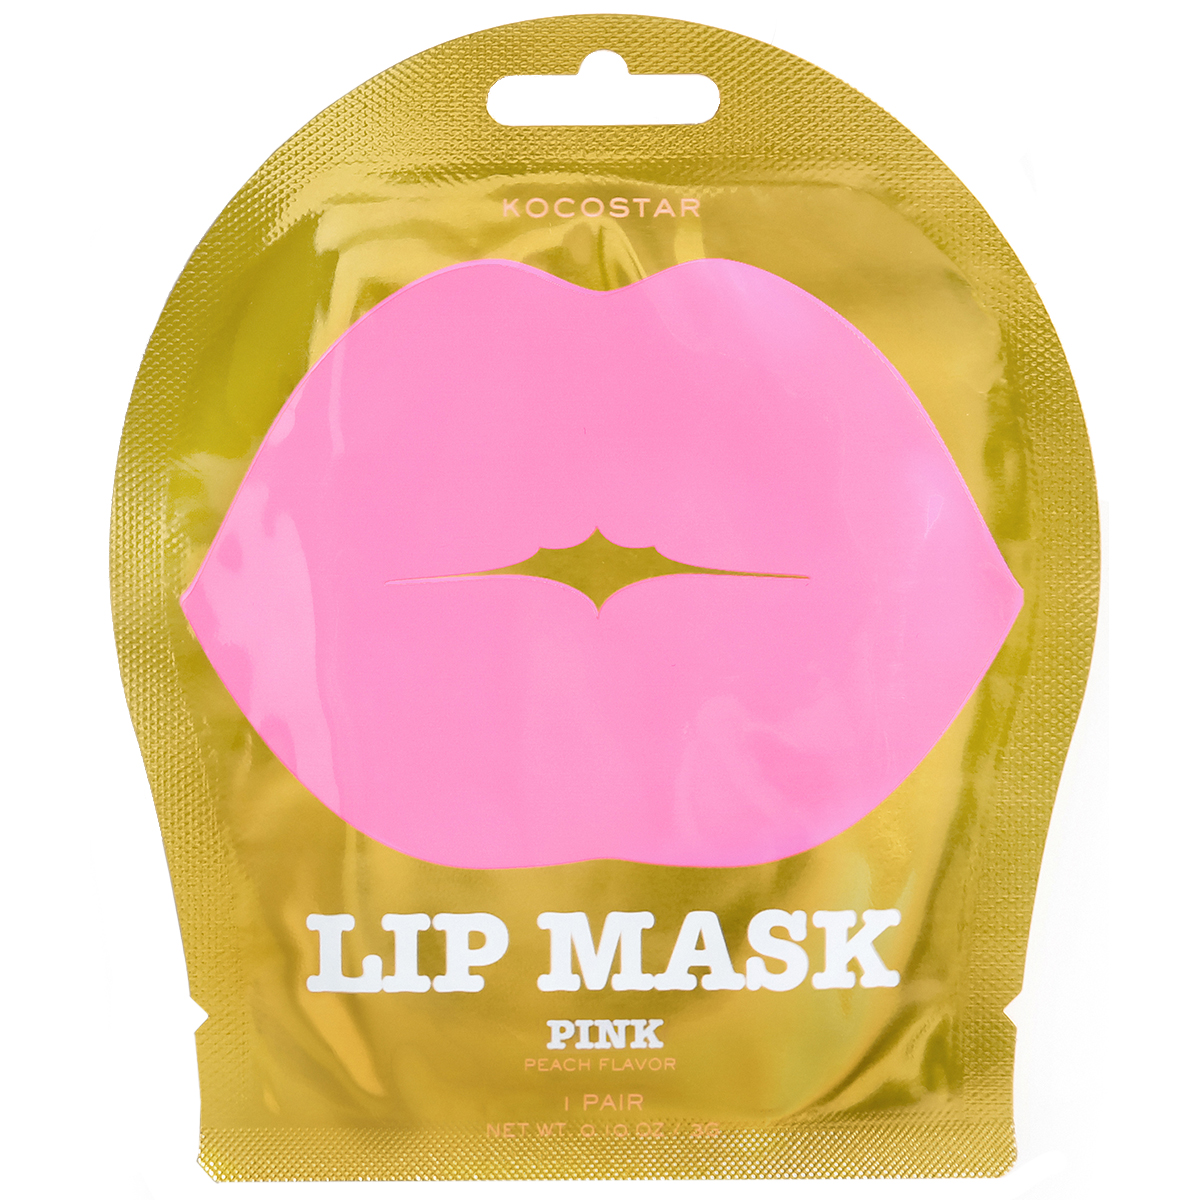 Lip Mask Pink Peach, Kocostar K-Beauty